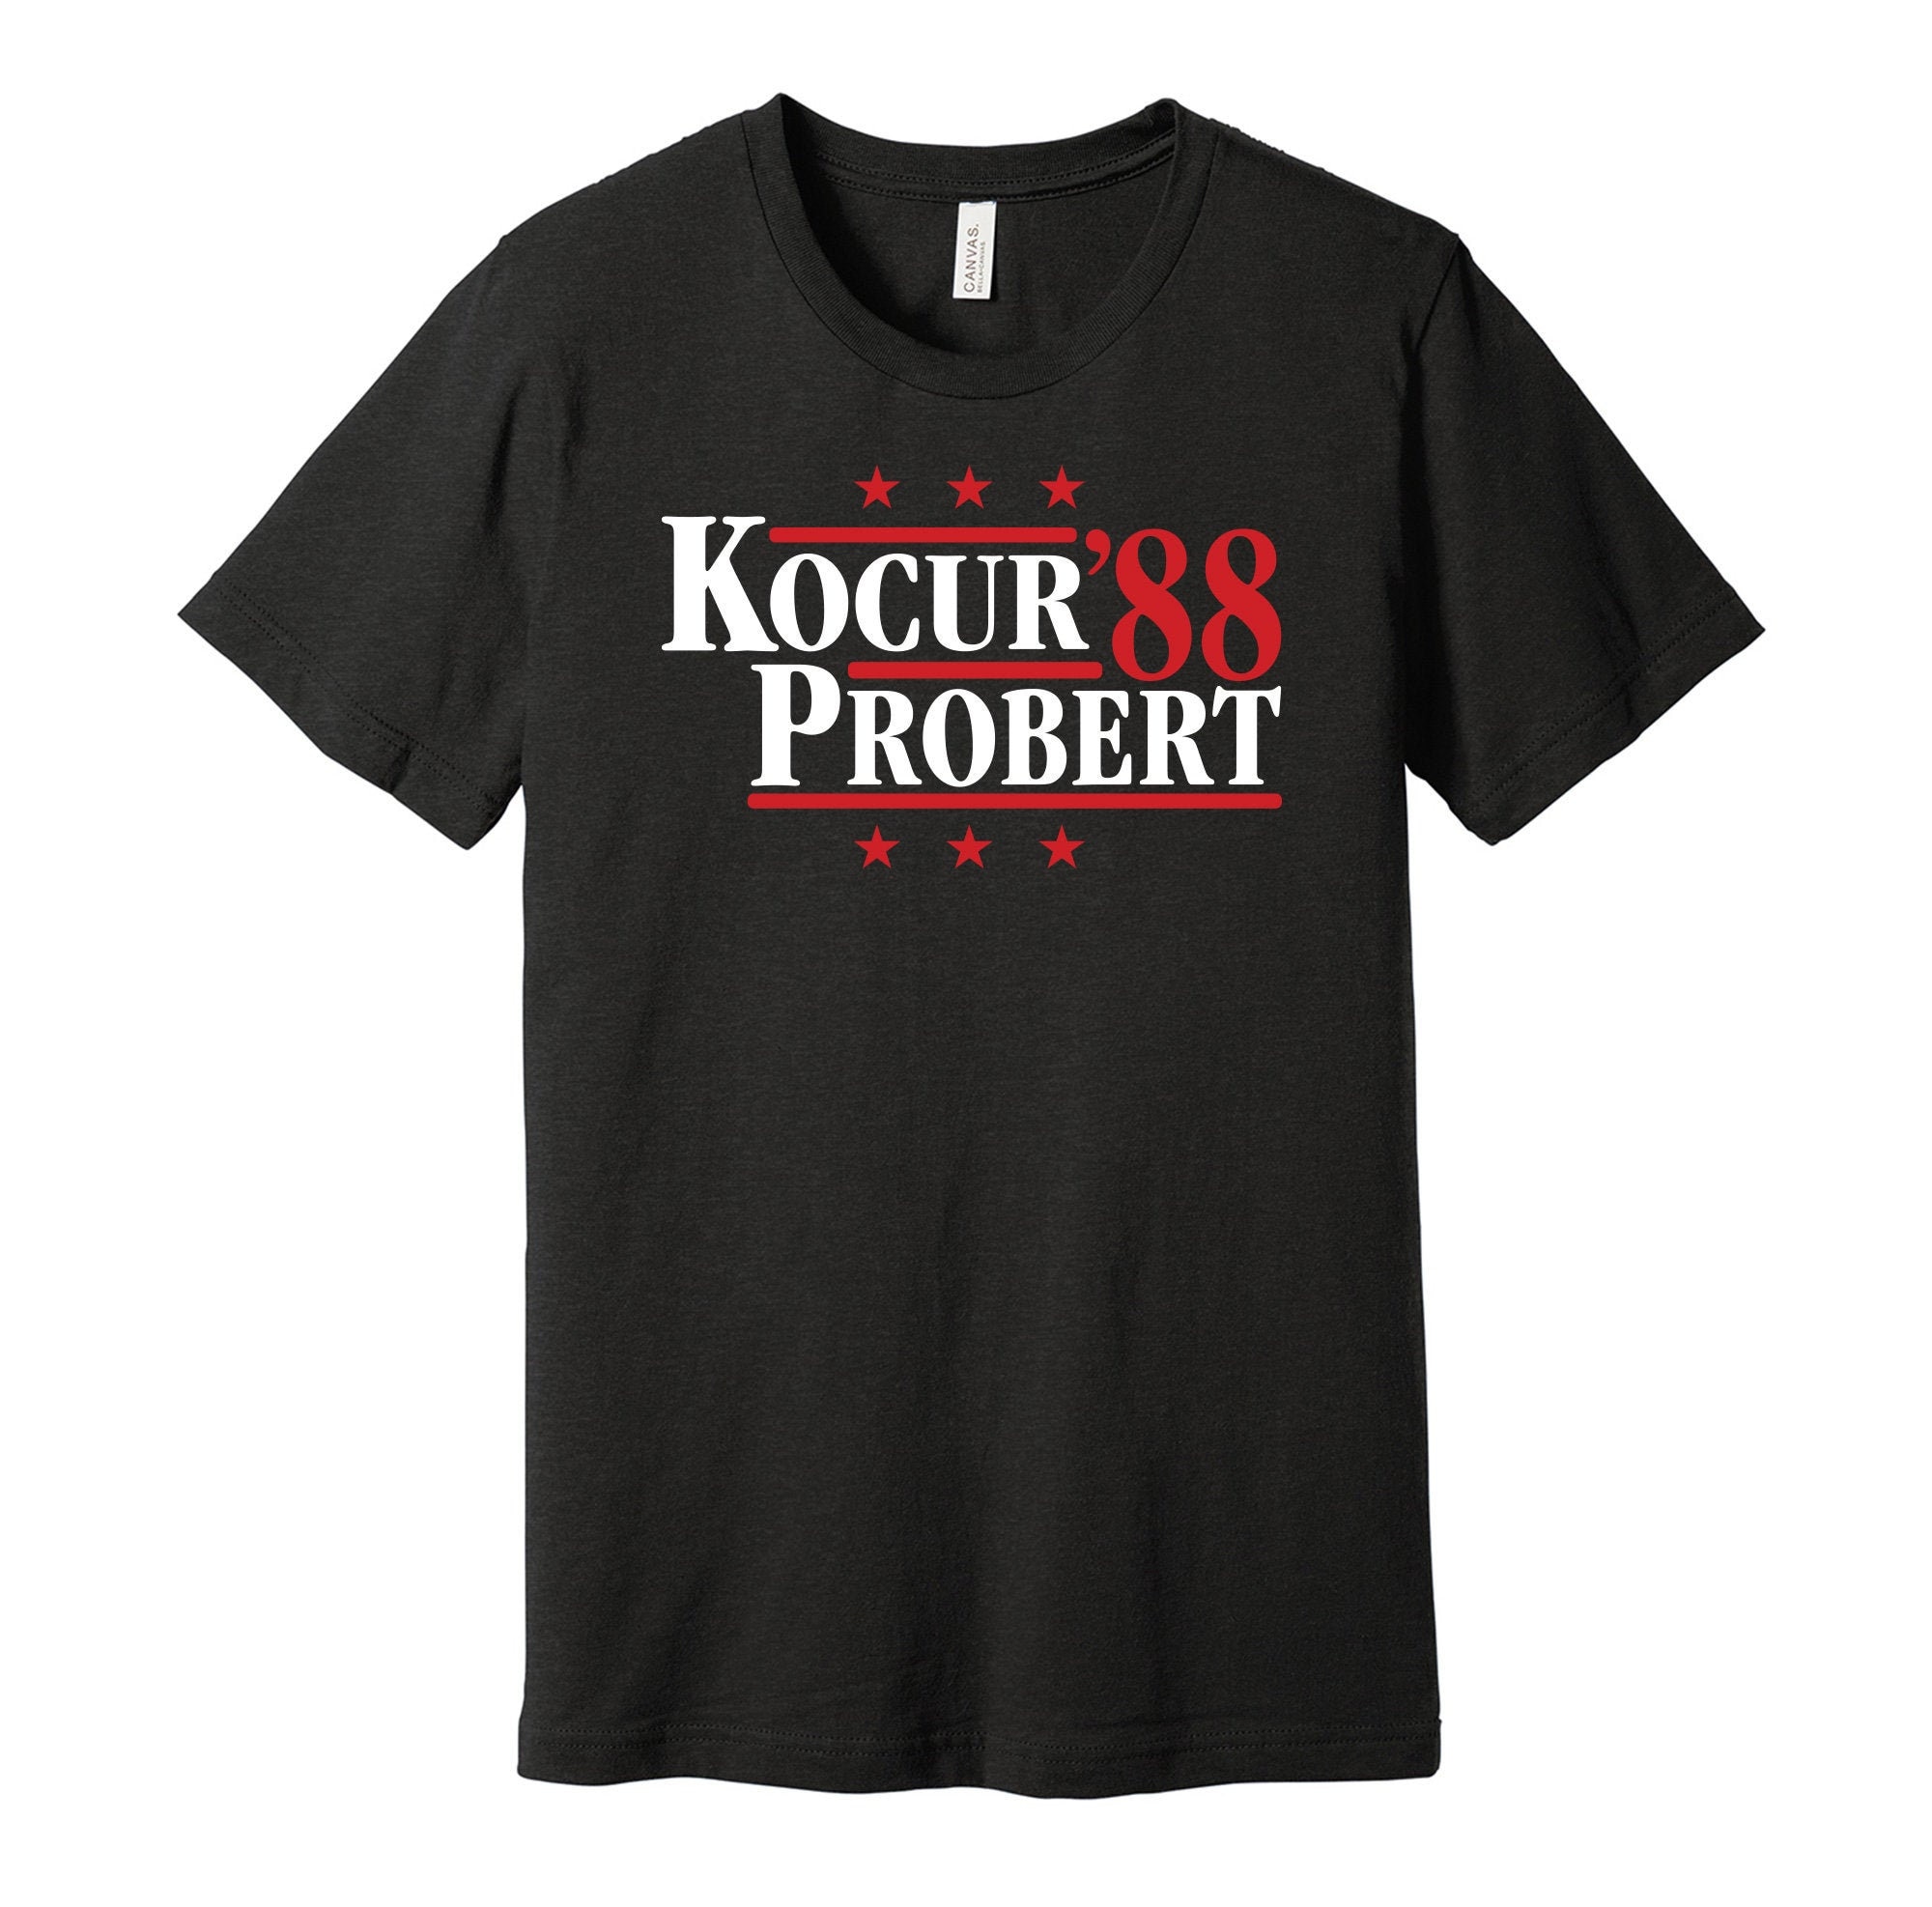 BRUISE BROTHERS T-Shirt: Bob Probert & Joey Kocur